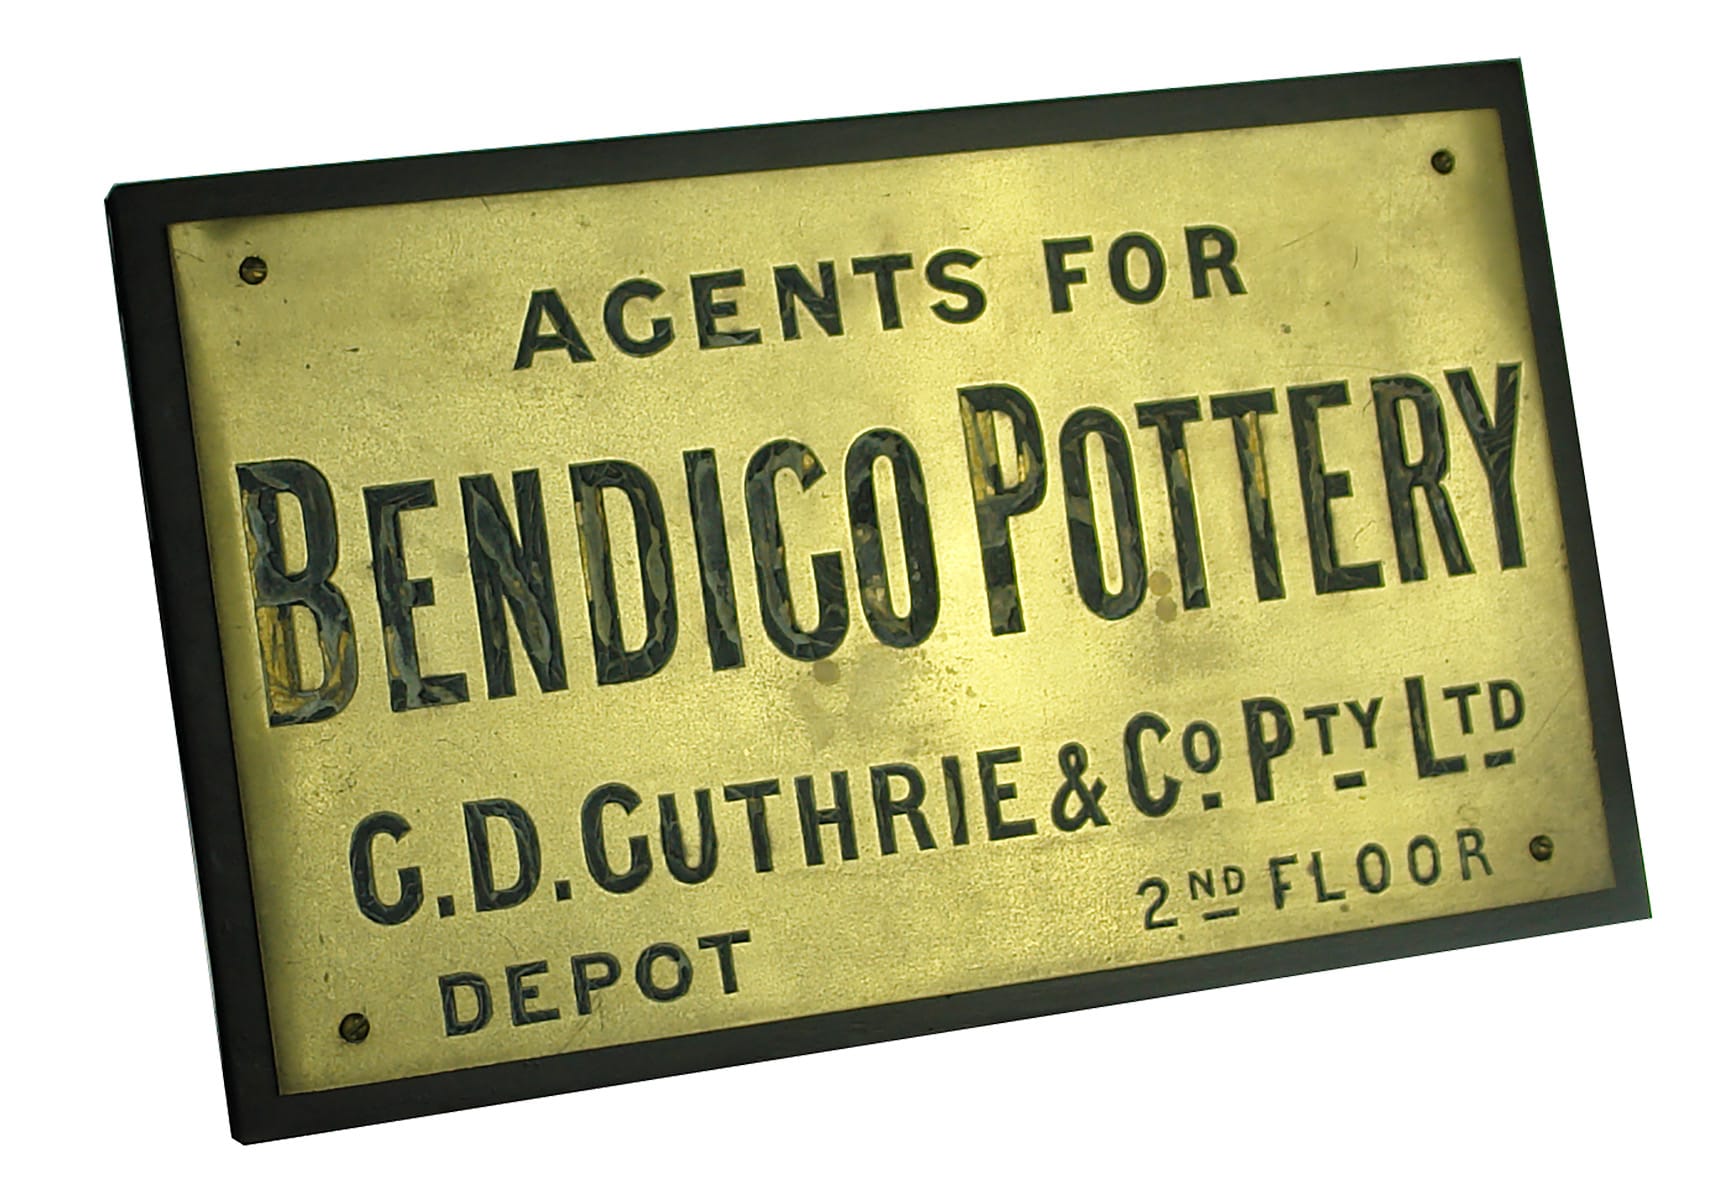 Bendigo Pottery Guthrie Depot Original Brass Sign